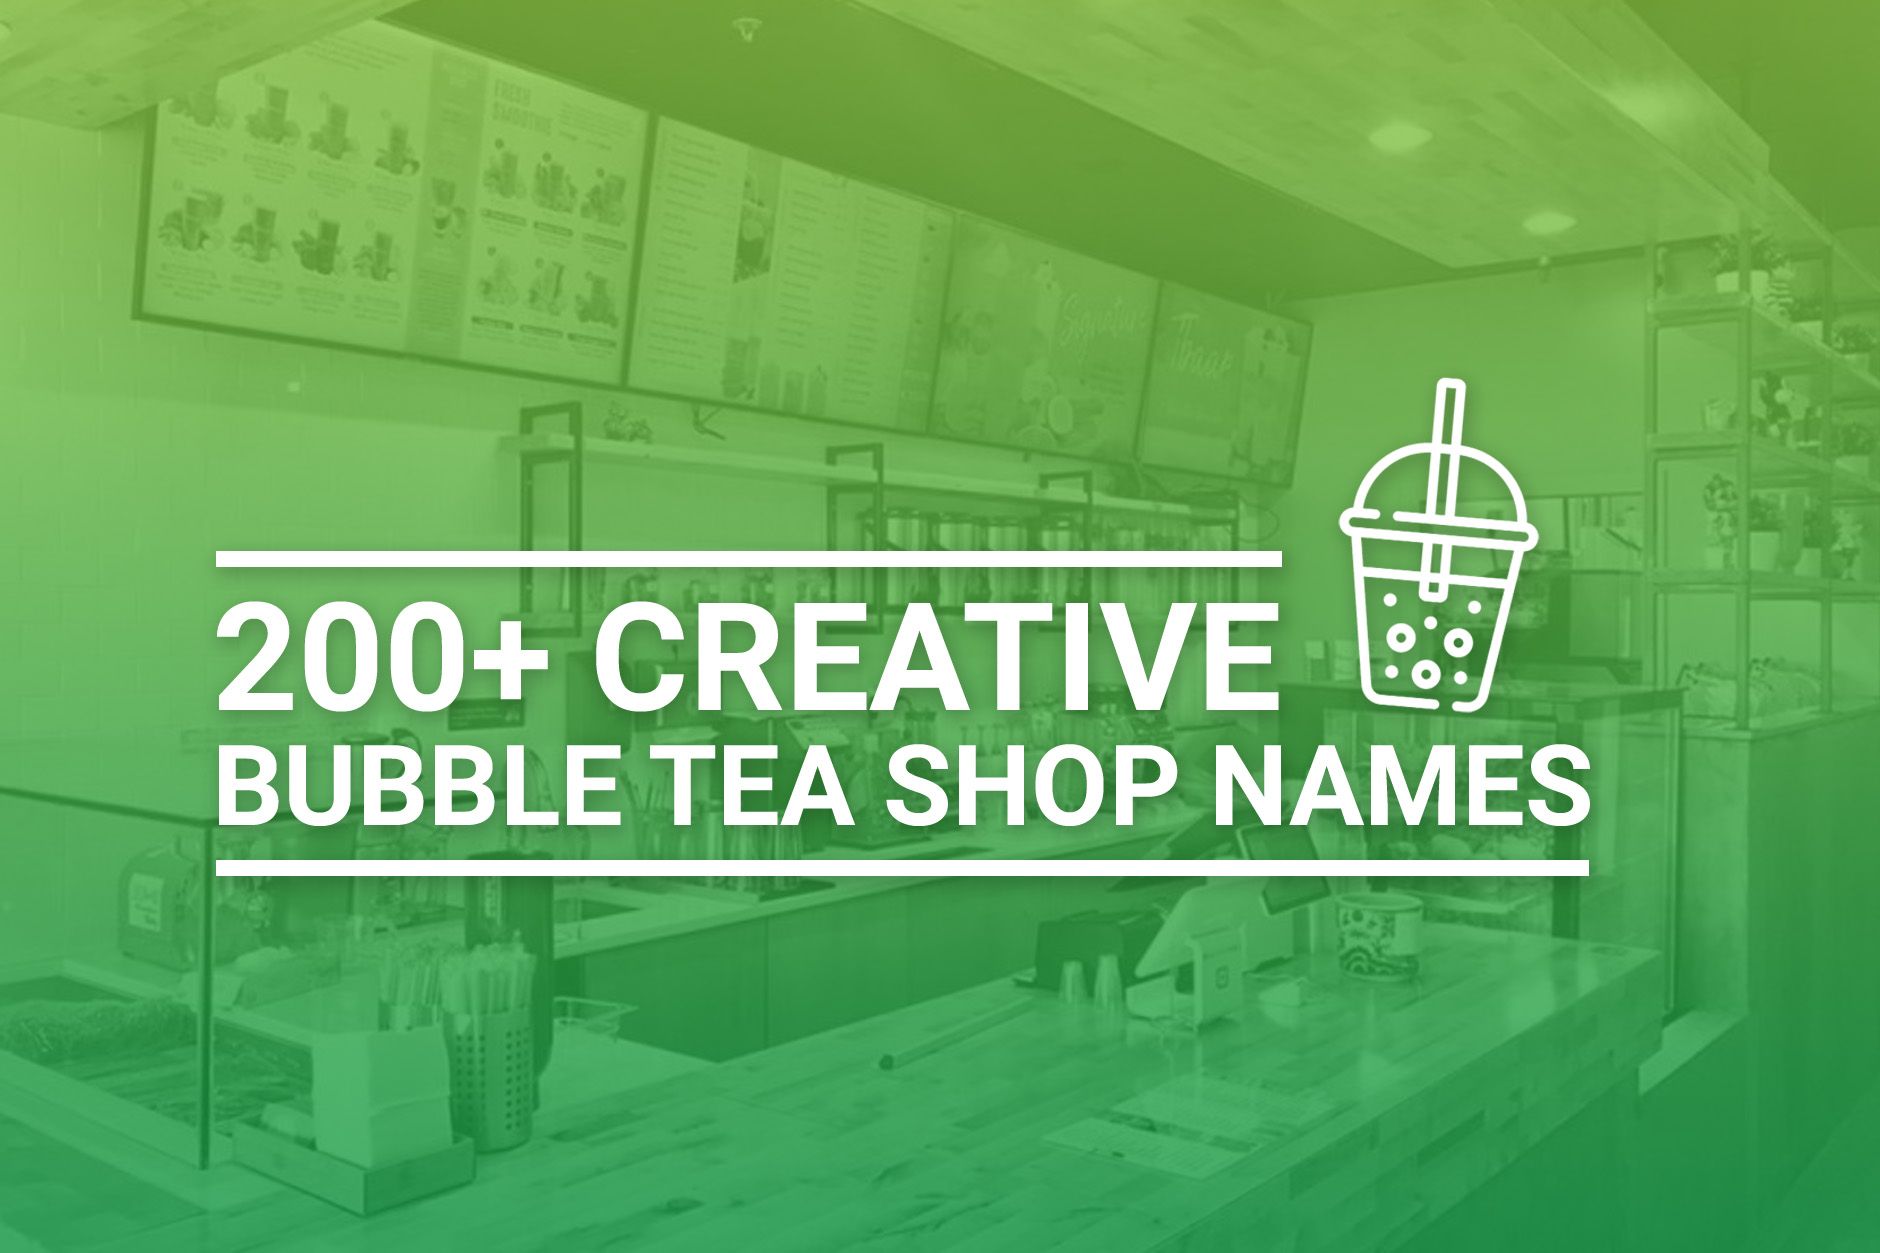 Creative Bubble Tea Shop Names